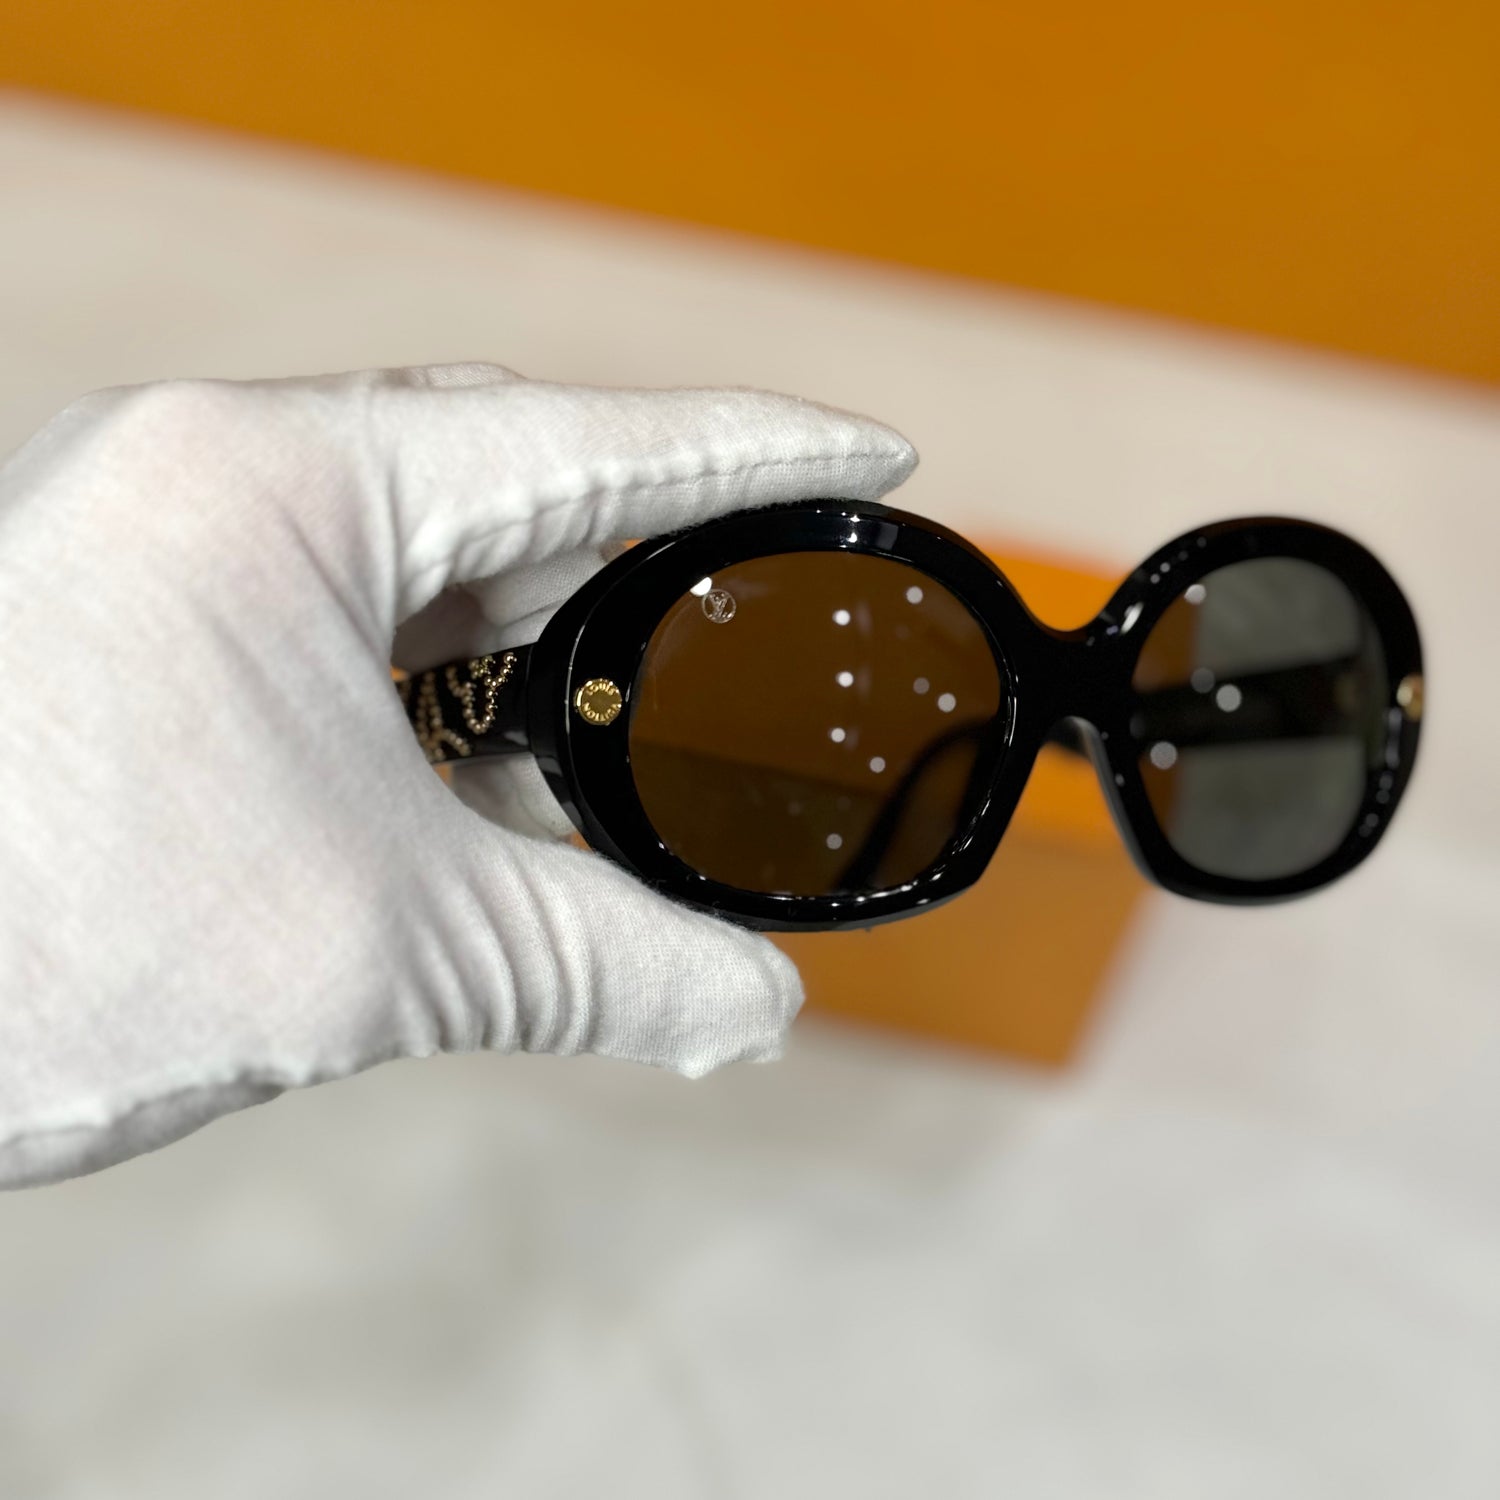 Louis Vuitton - Sunglasses